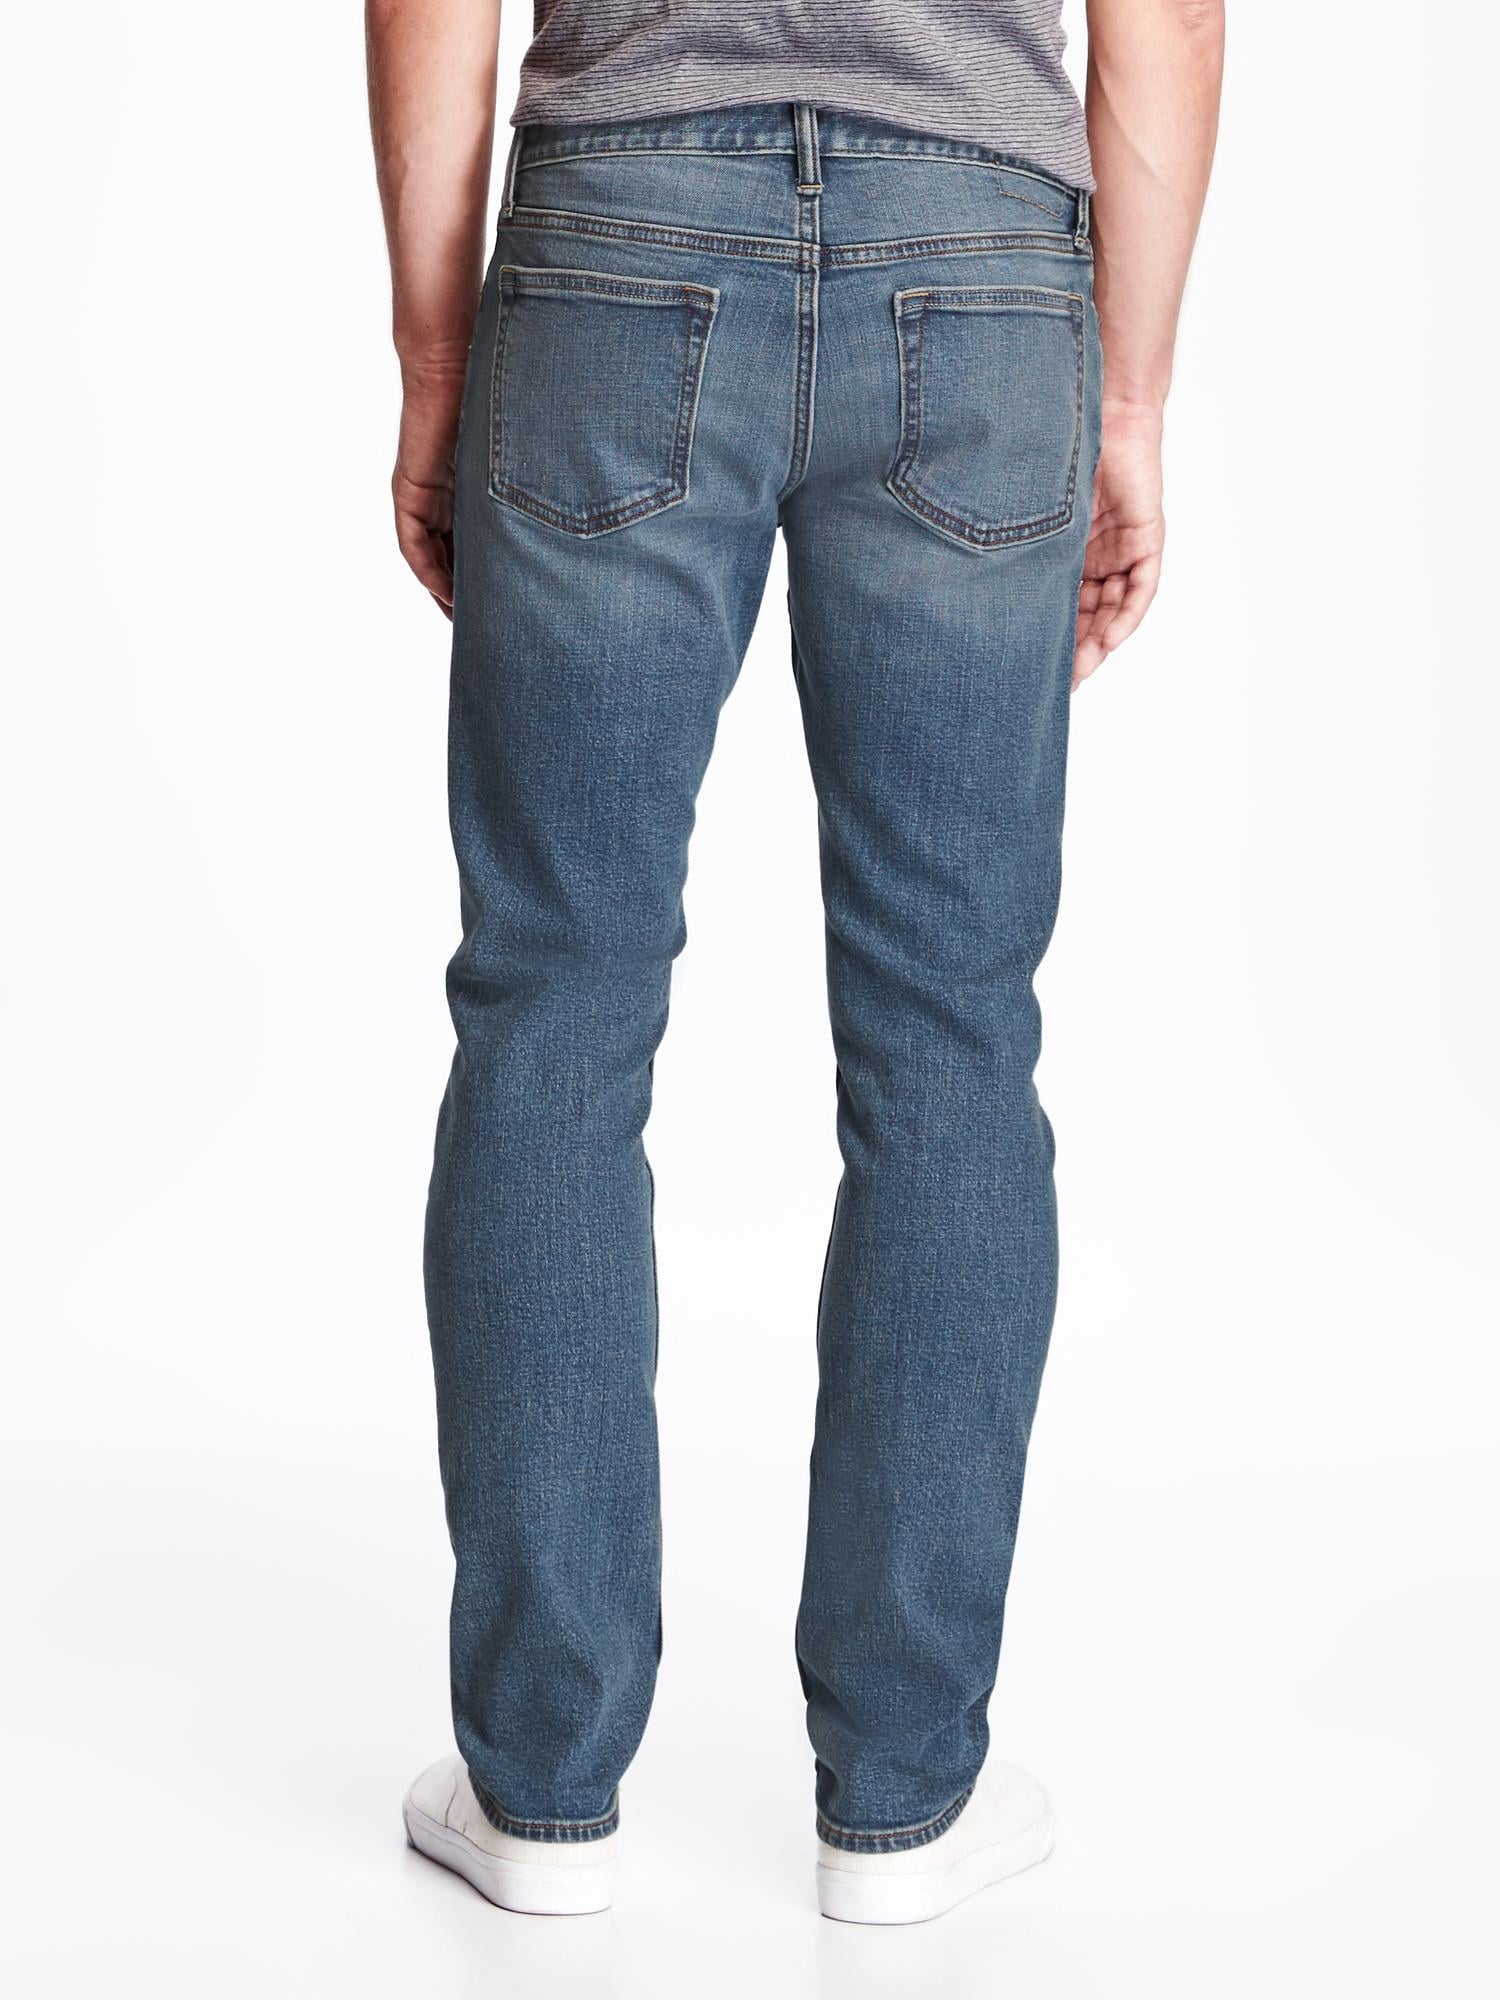 Skinny Built-In Flex Jeans for Men